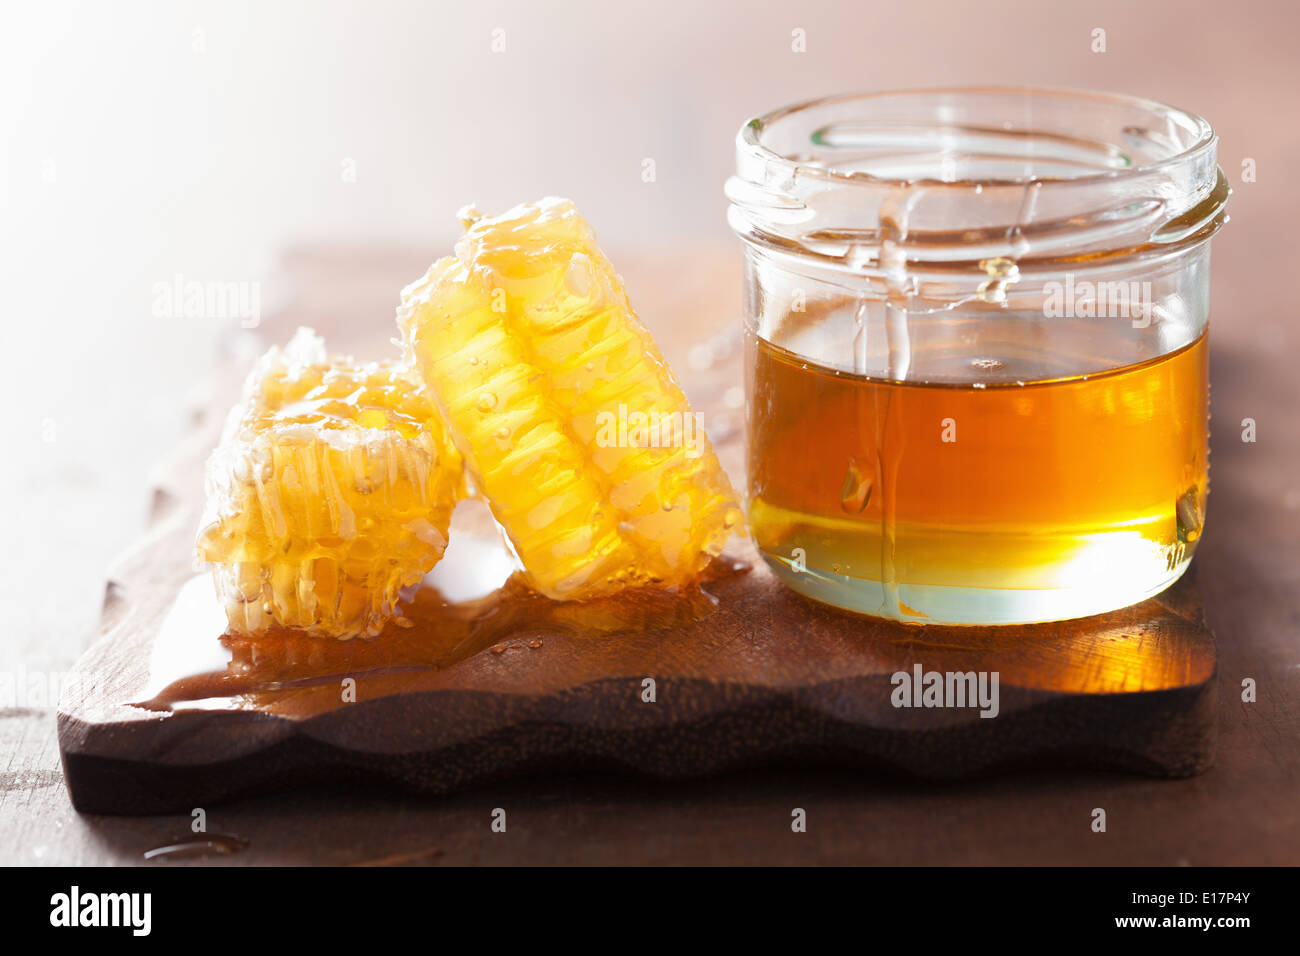 De miel et le miel en pot sur fond de bois Banque D'Images